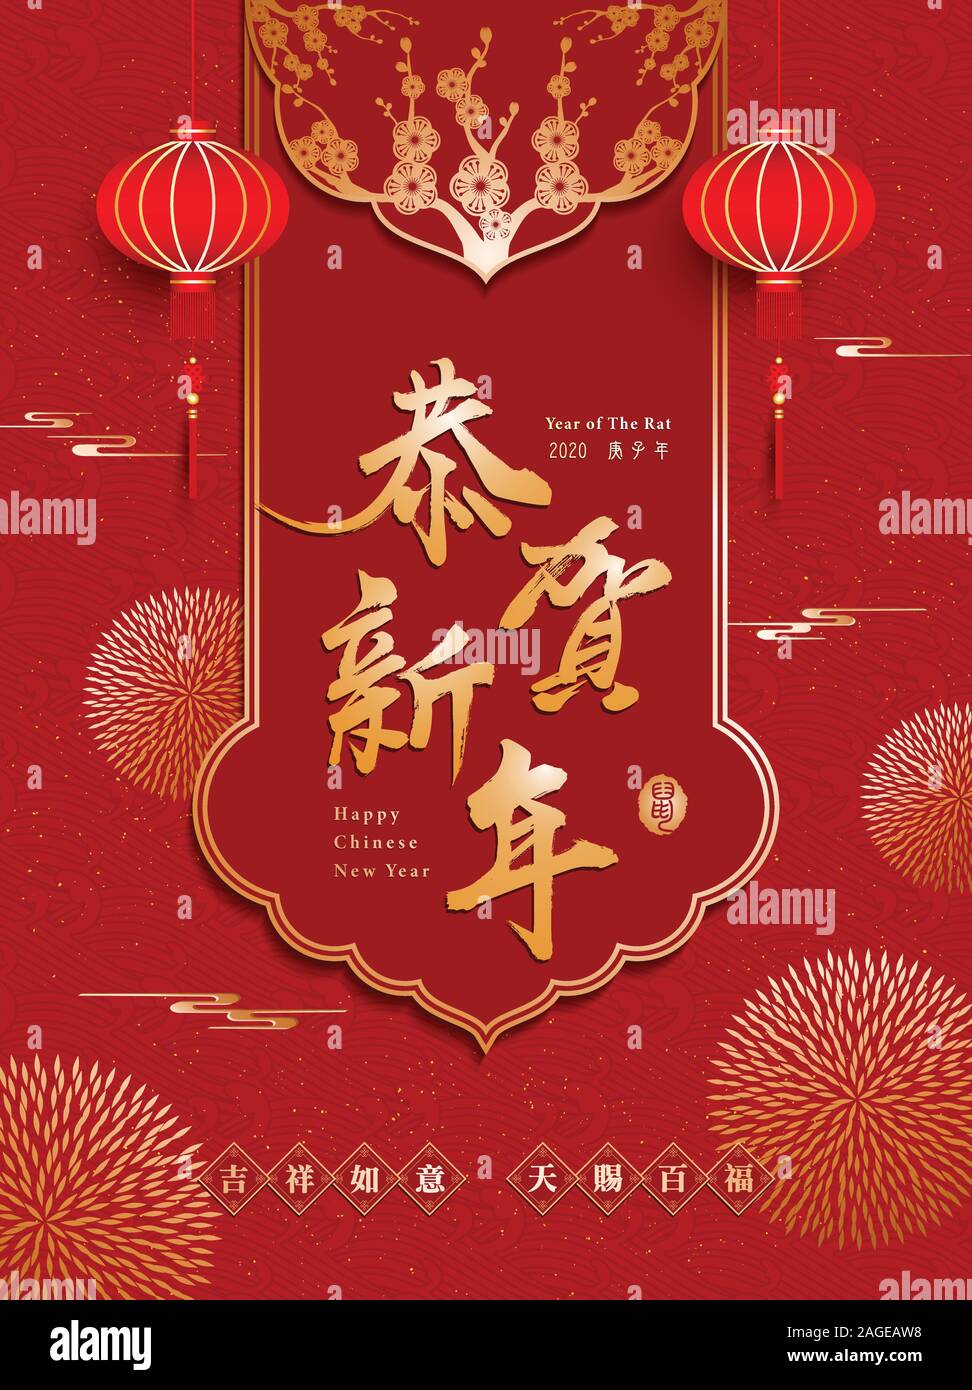 Le Nouvel An chinois, l'Année du Rat. Traduction : Joyeux Nouvel An chinois. partie la plus basse de la traduction d'étanchéité : bonne fortune , heureuse & la félicité. Illustration de Vecteur